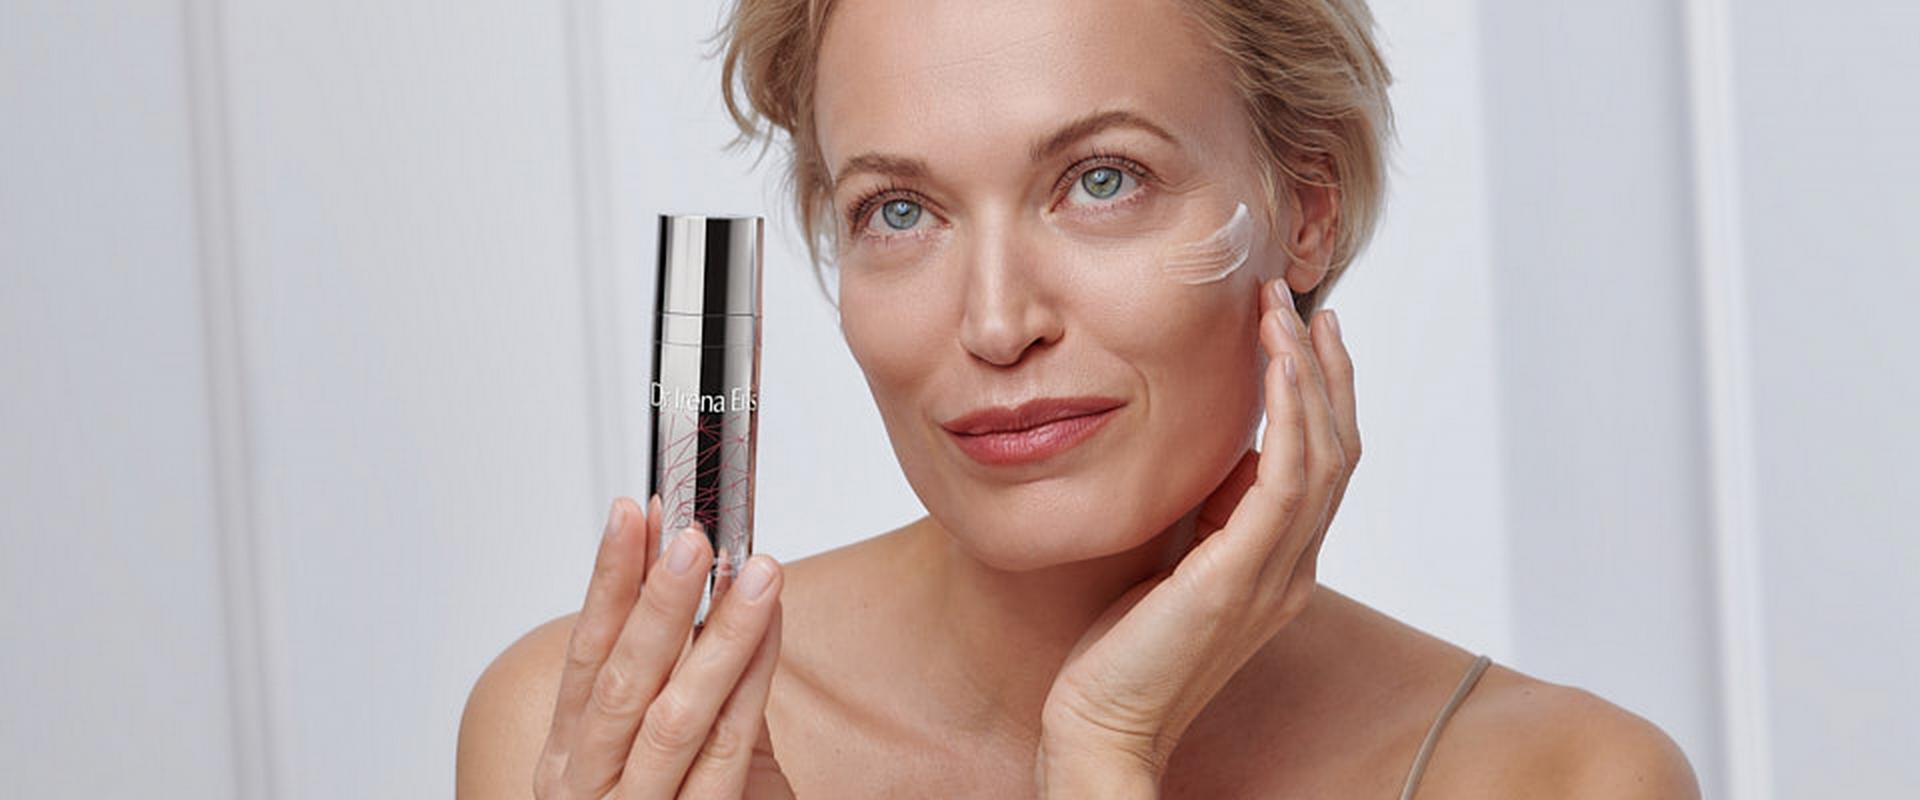 Dr Irena Eris ScientiVist – skuteczne formuły kosmetyków inspirowane nauką o skórze